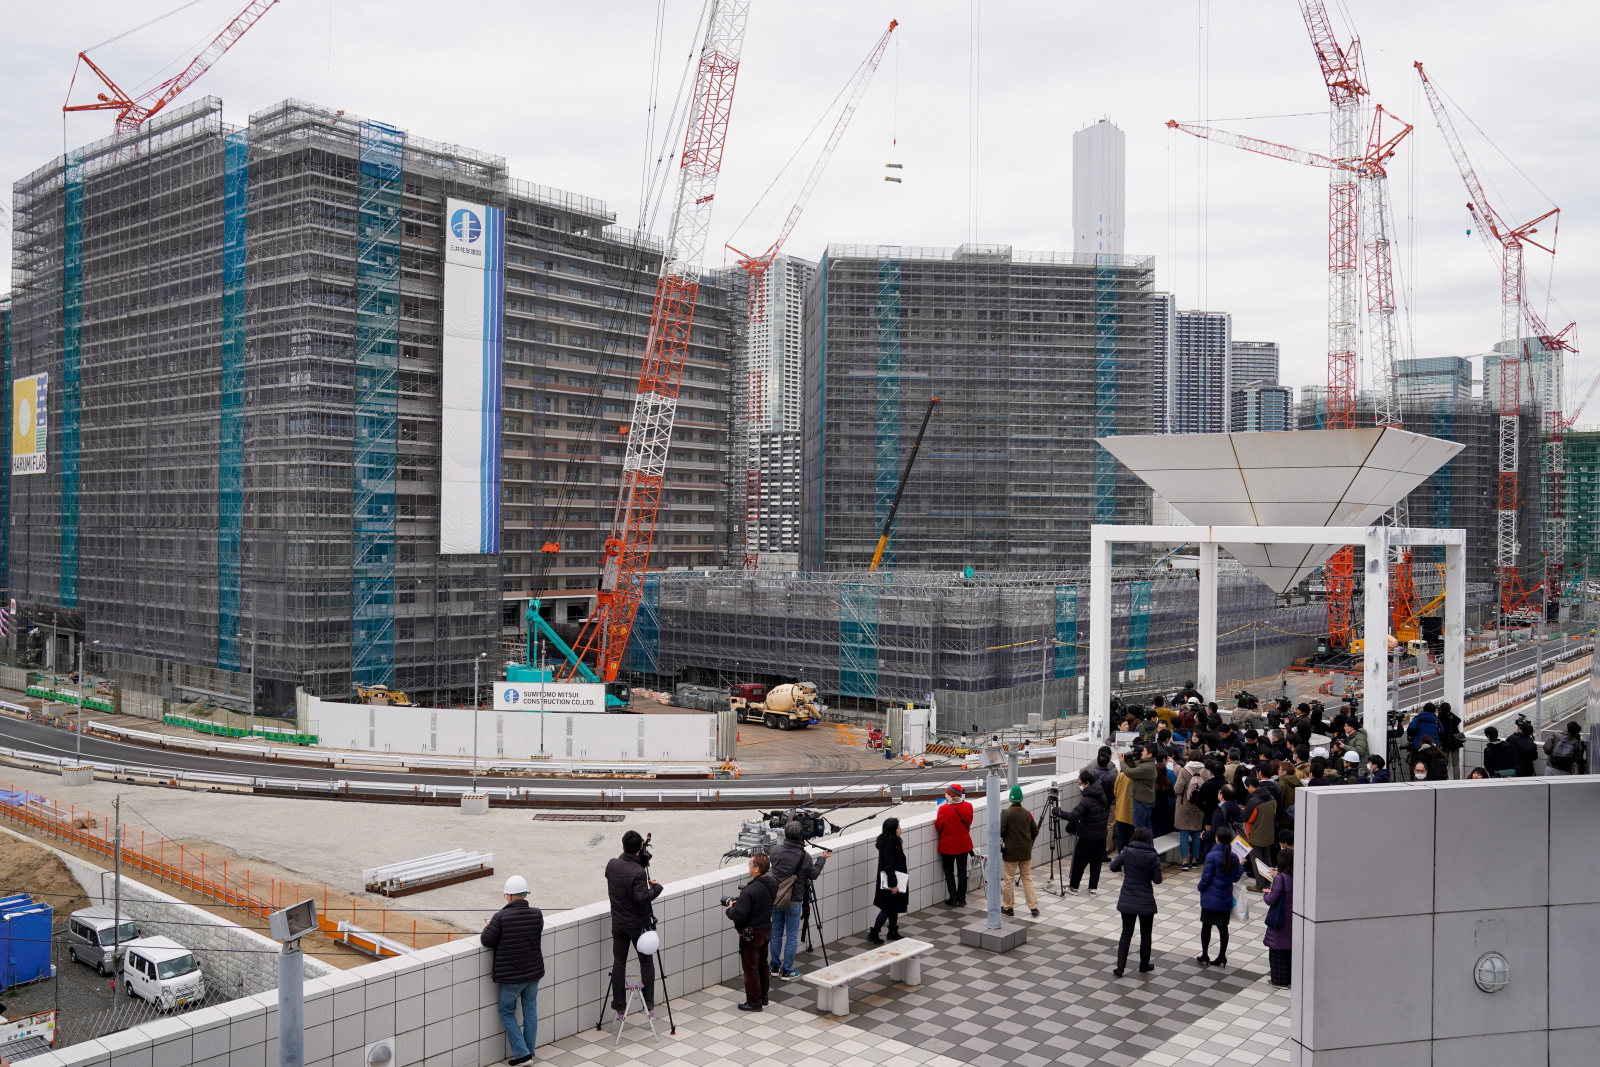 Wizyta na budowie wioski olimpijskiej przed Igrzyskami Olimpijskimi w Tokio w 2020 roku, Japonia. Fot. PAP/EPA/CHRISTOPHER JUE